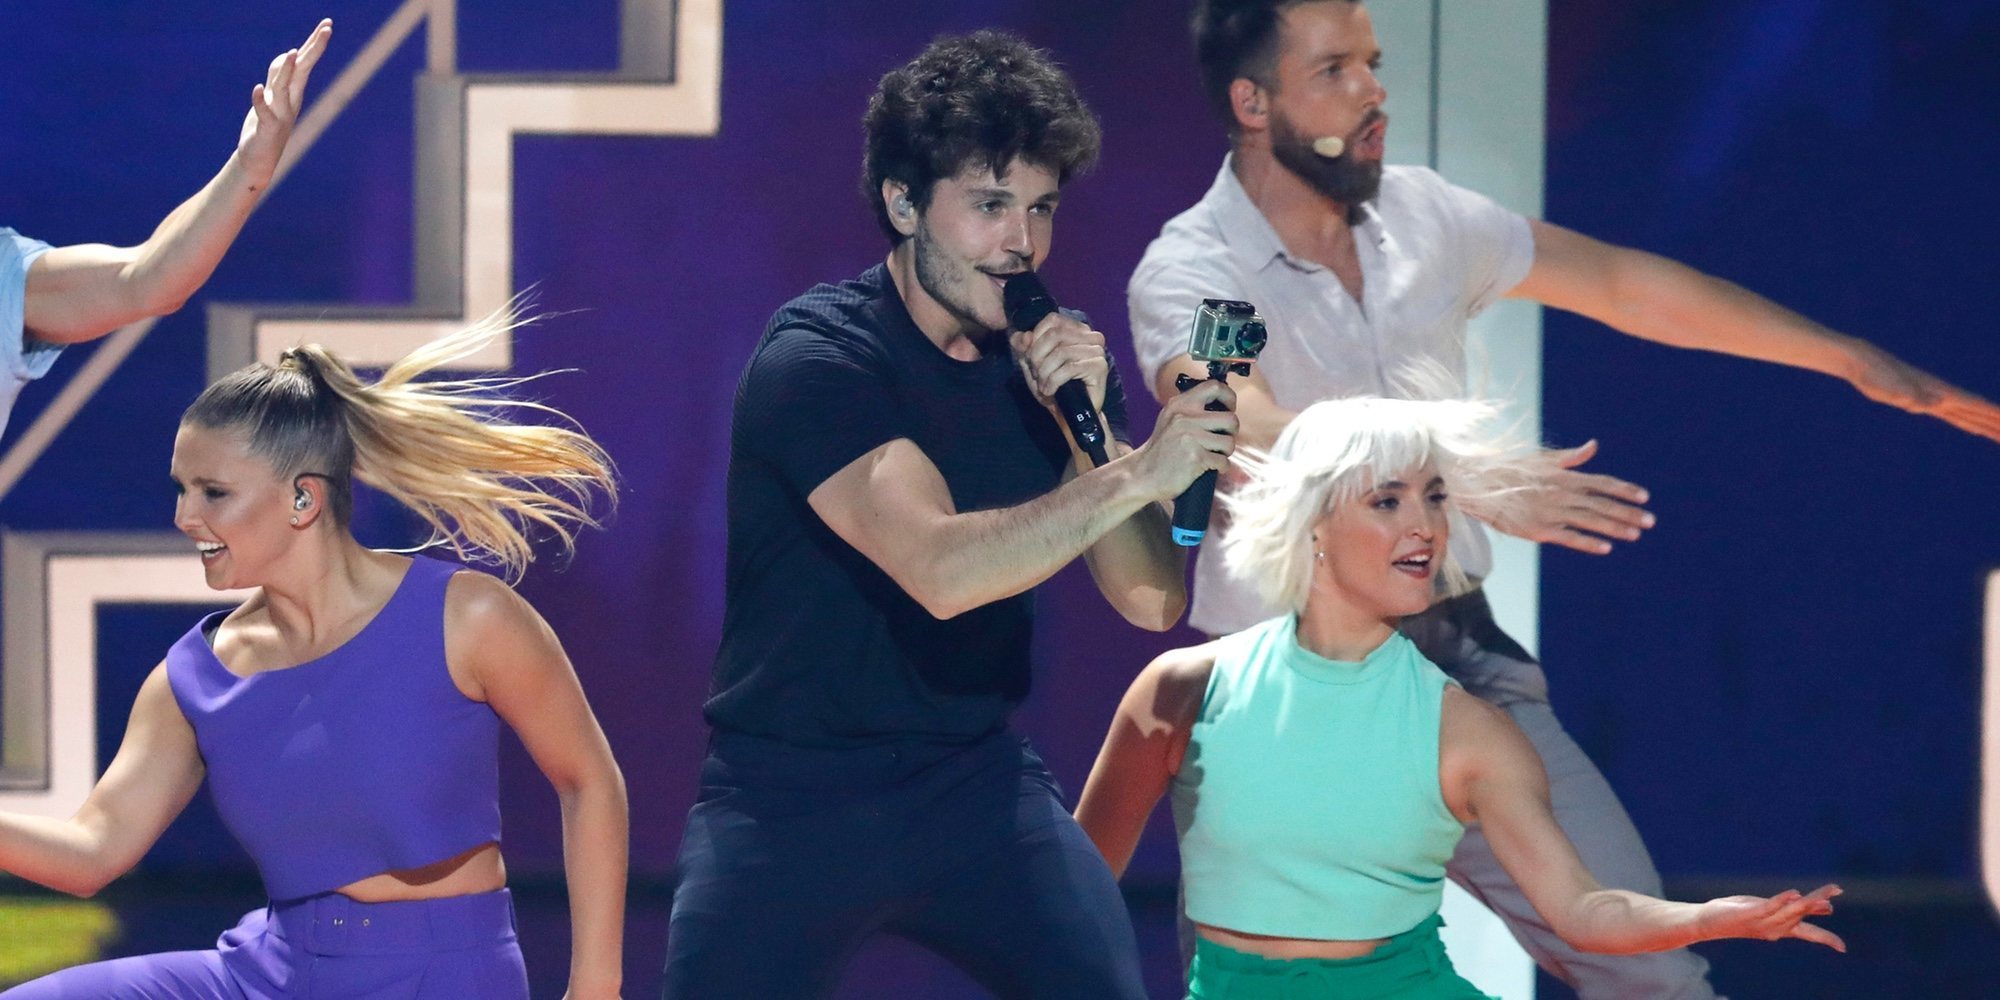 Mucho color y un robot llamado Paco: Así ha sido la actuación de Miki Núñez en el Festival de Eurovisión 2019